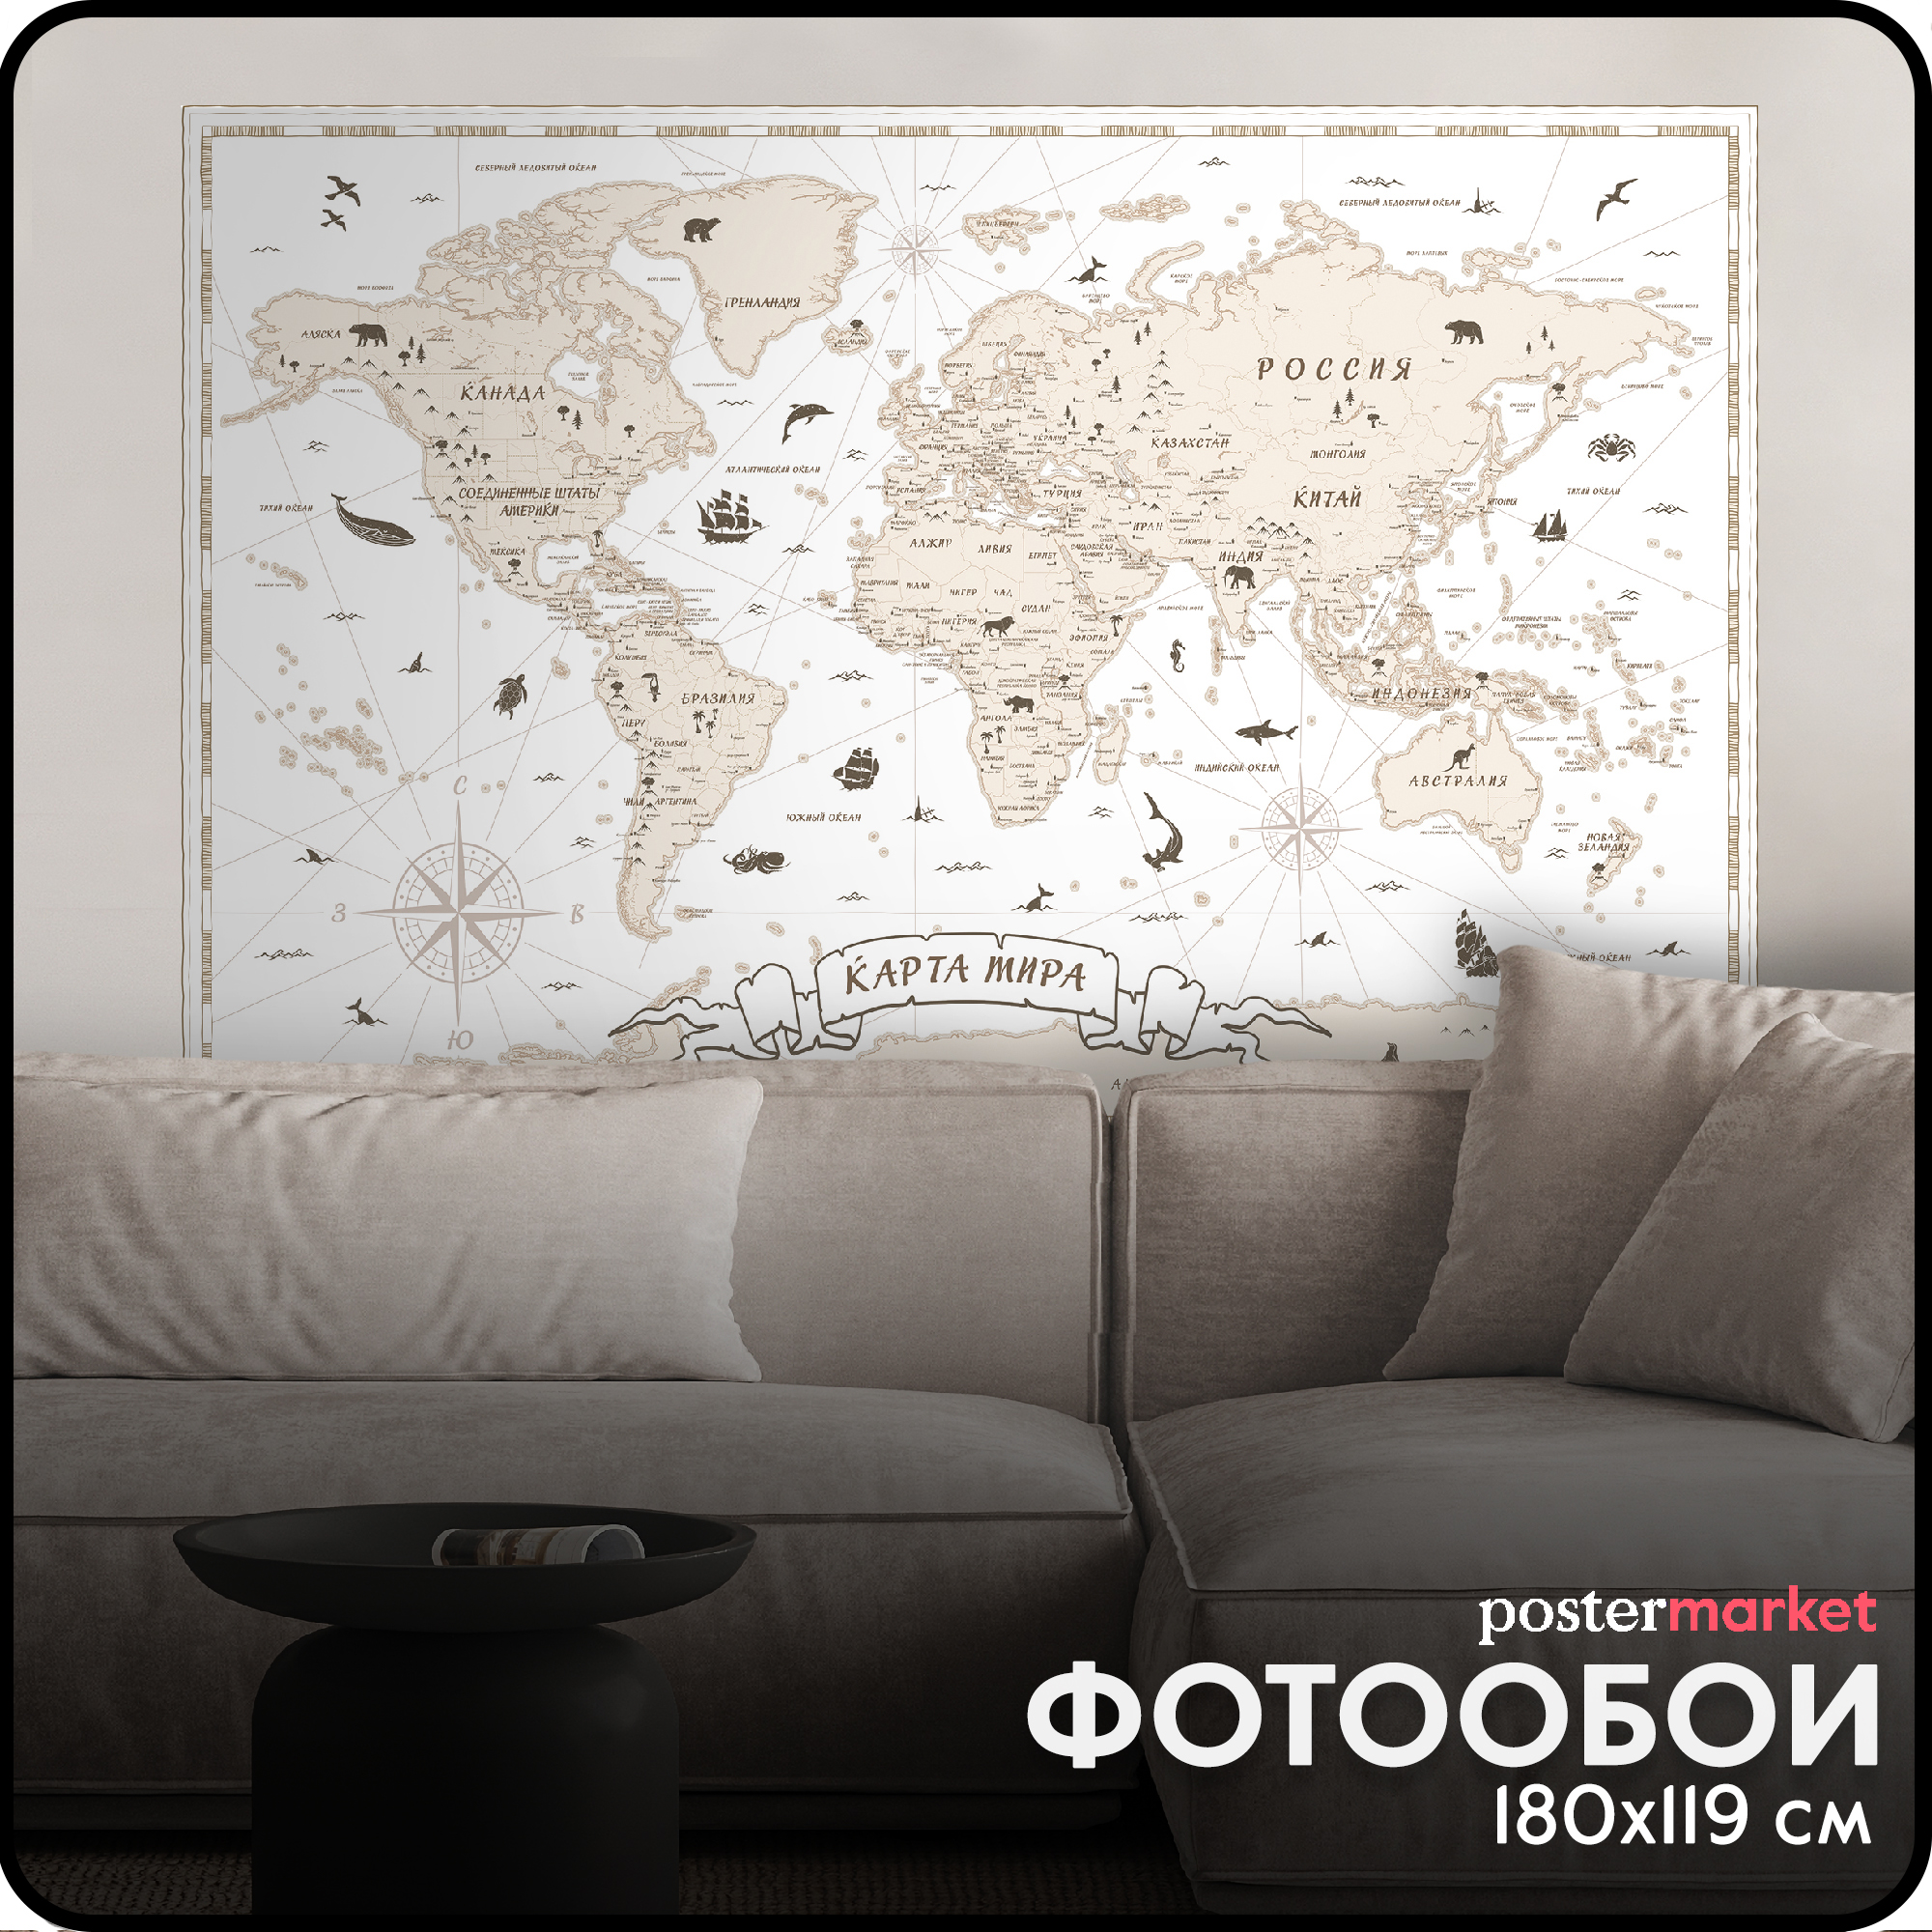 Фотообои бумажные Postermarket WM-487NL Карта мира 119х180 см